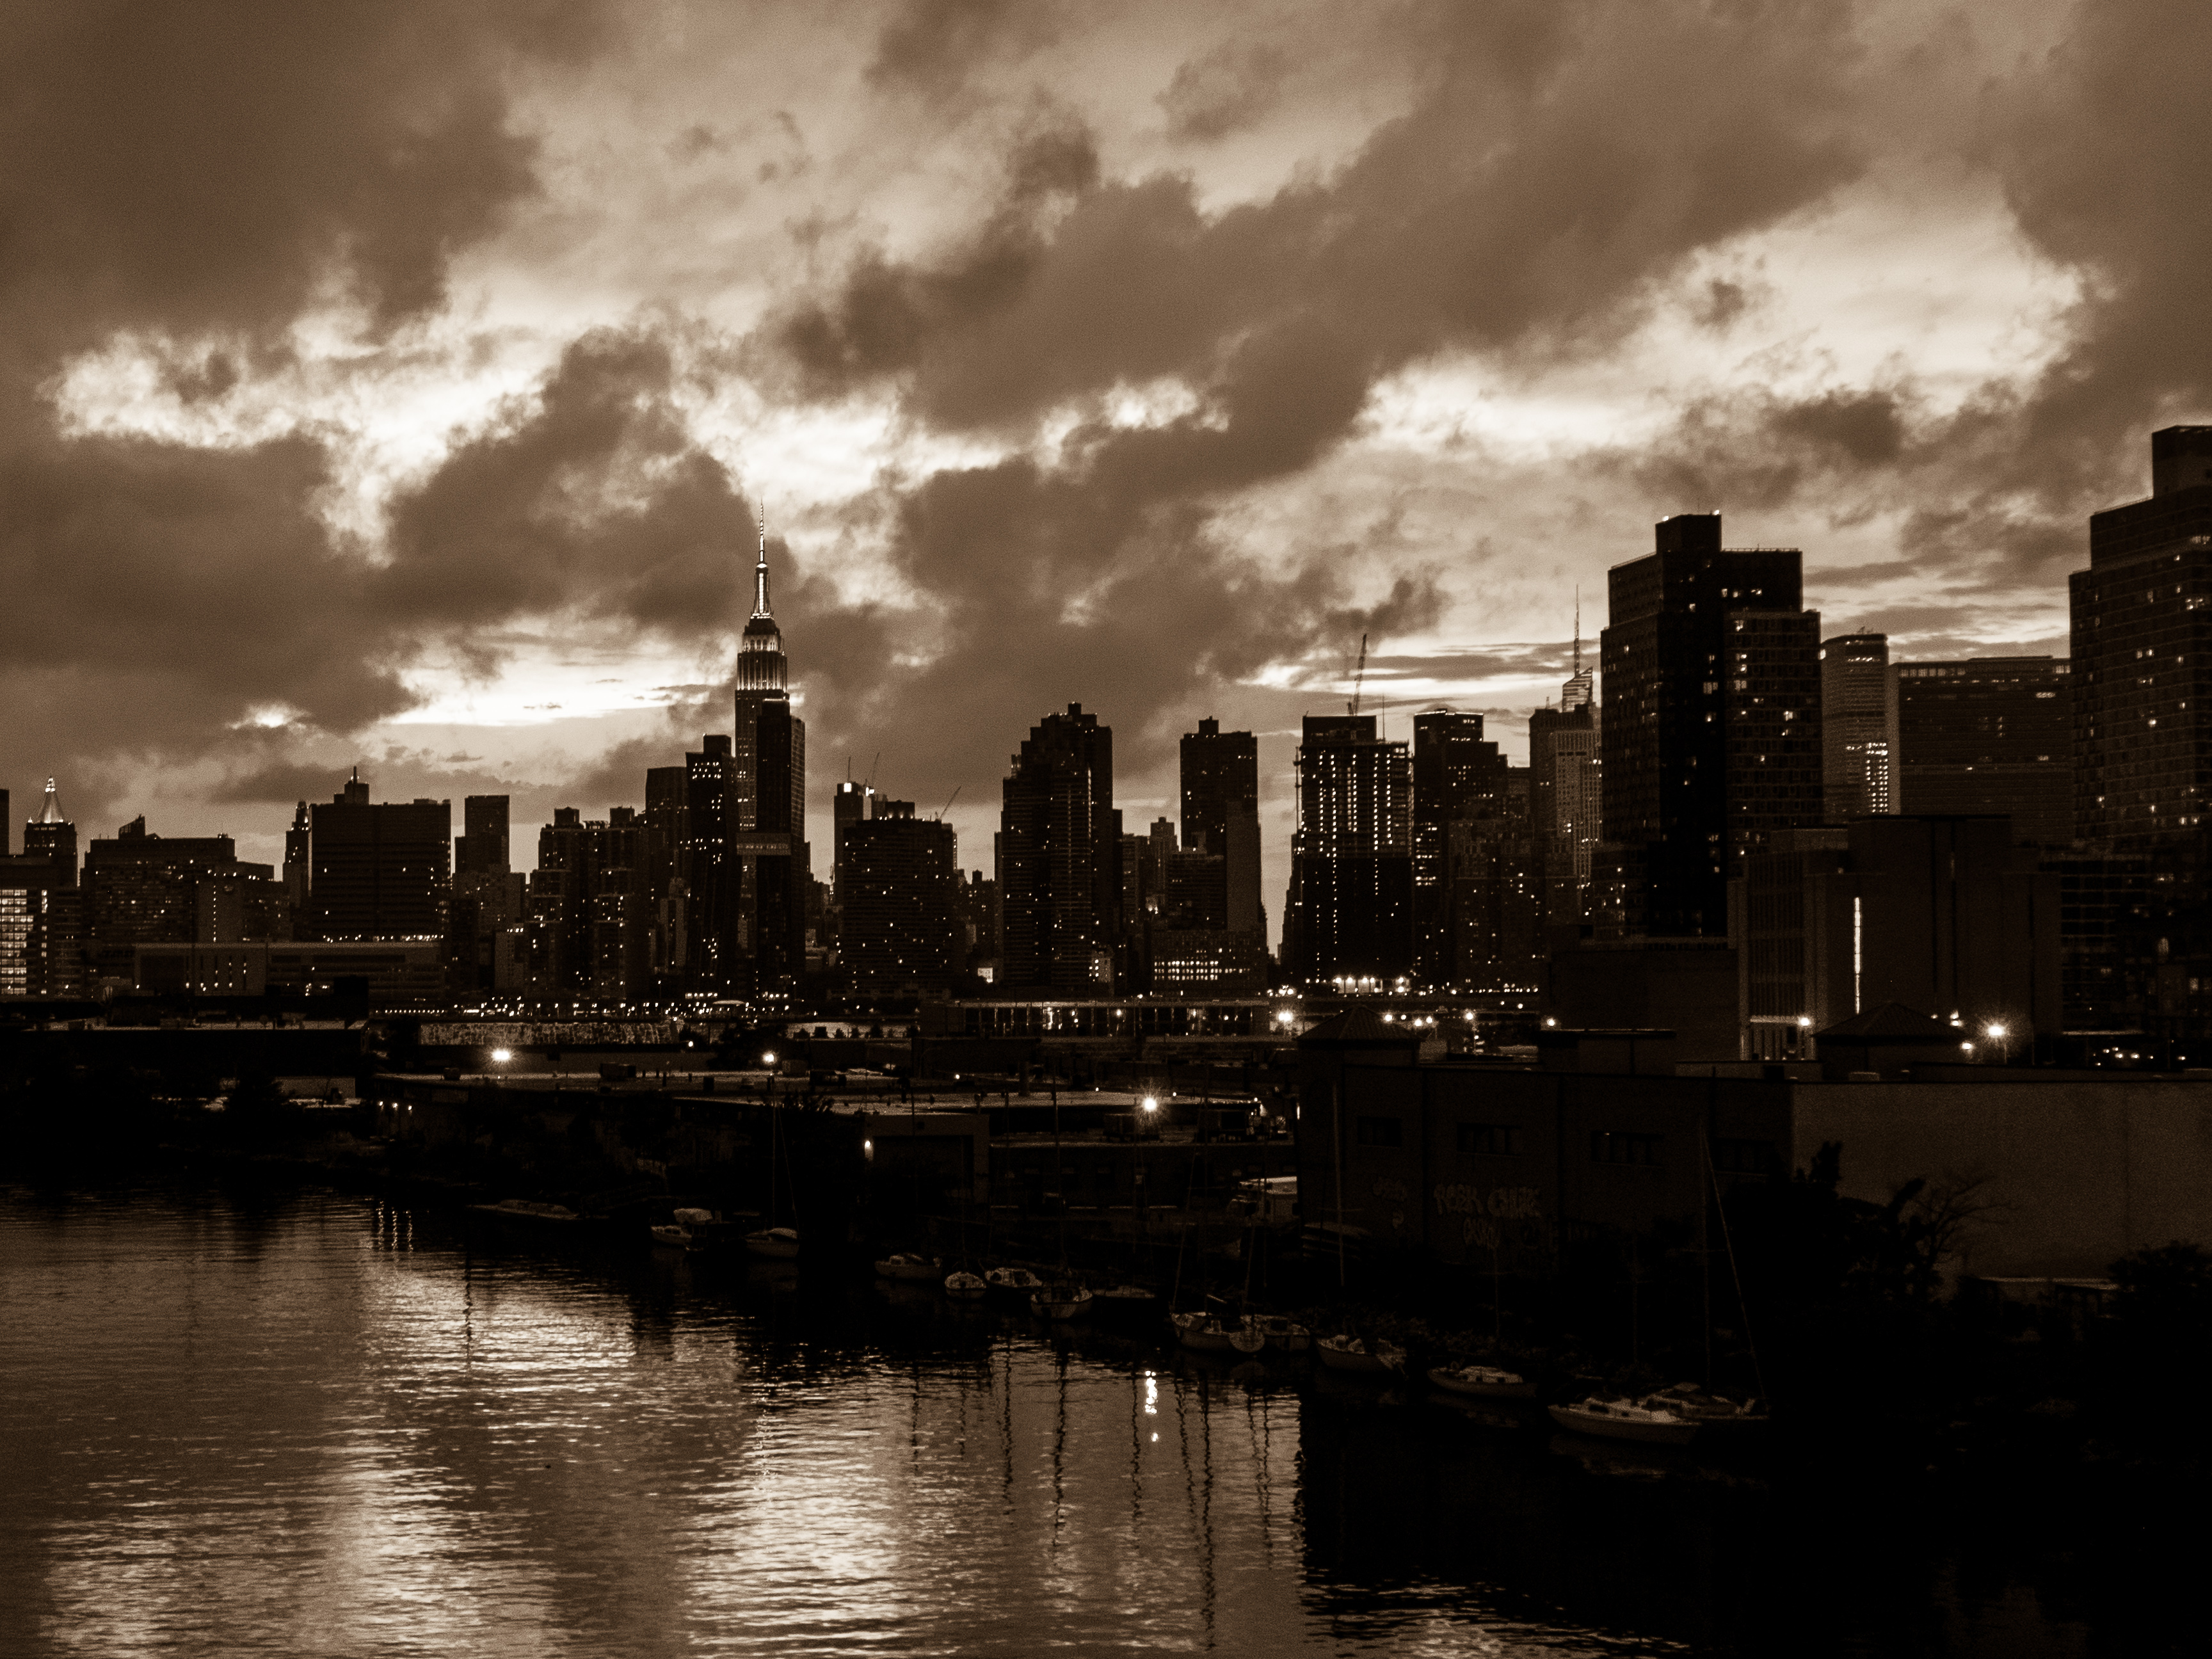 Free photo: Brooklyn bridge view - B&w, City, LIC - Free Download - Jooinn